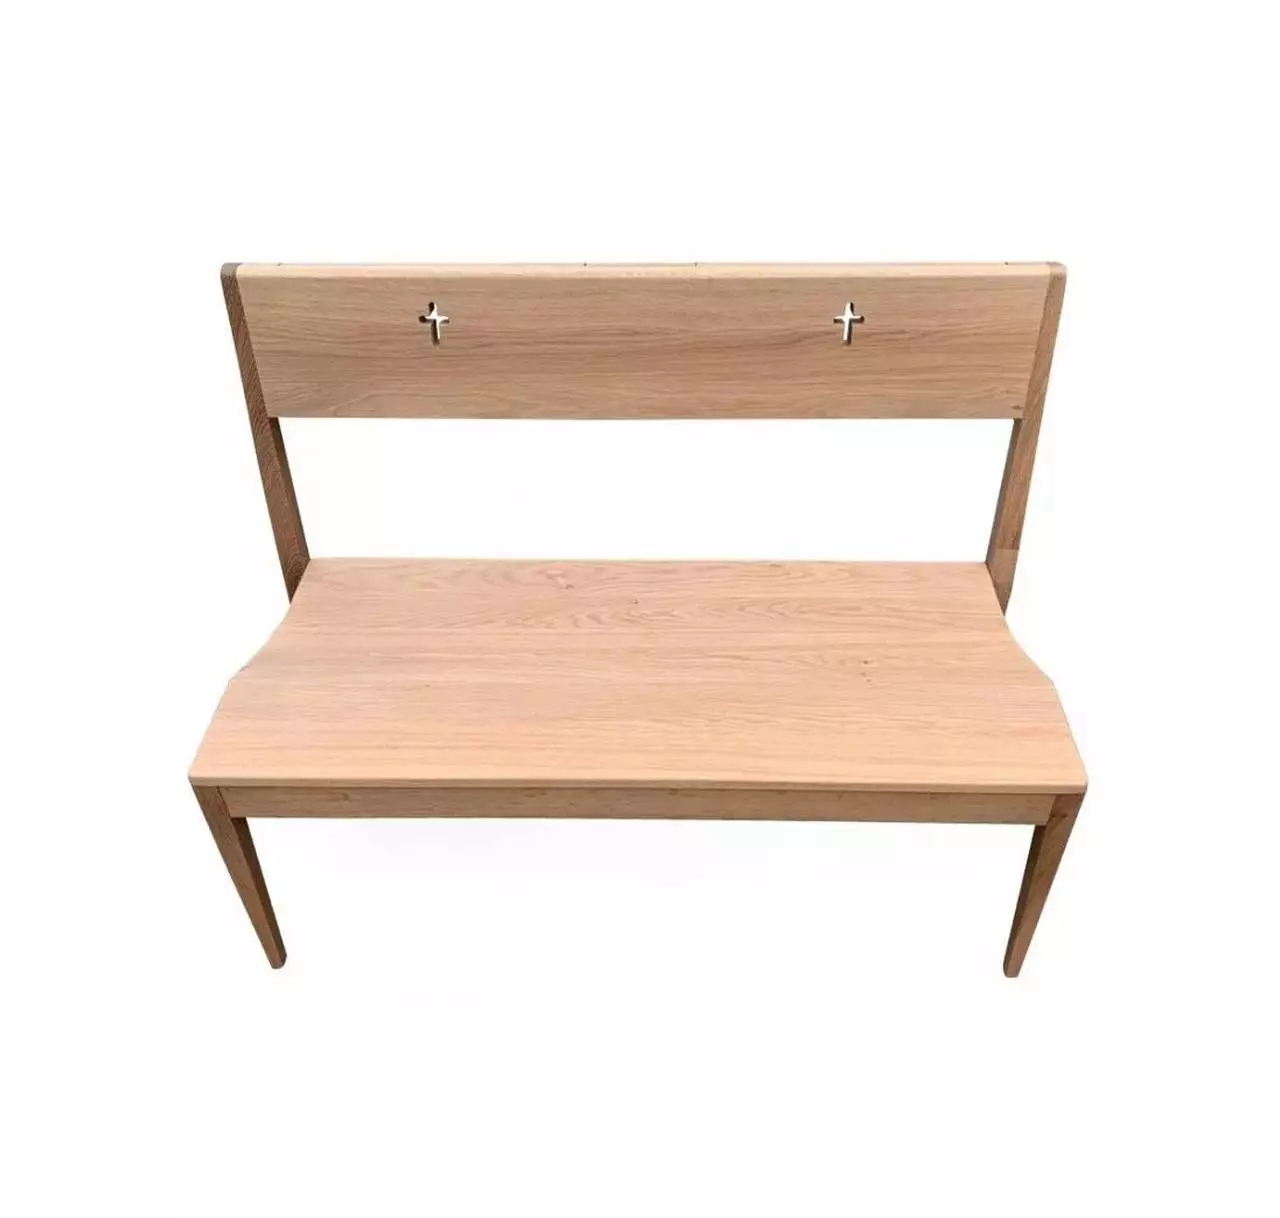 Drewniana ławka koscielna w klasycznym minimalistycznym stylu